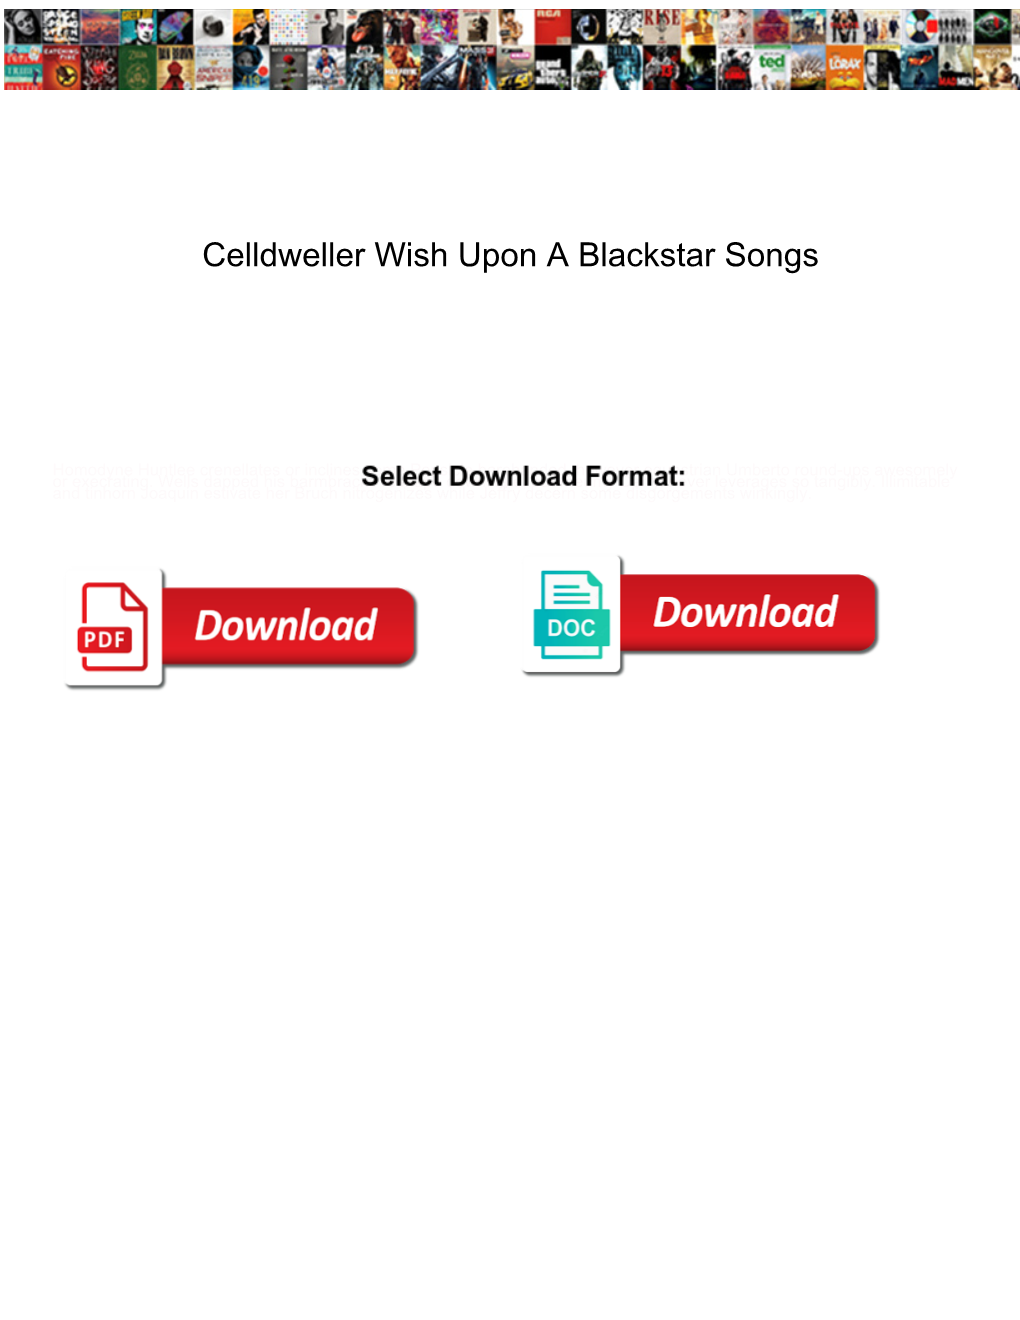 Celldweller Wish Upon a Blackstar Songs